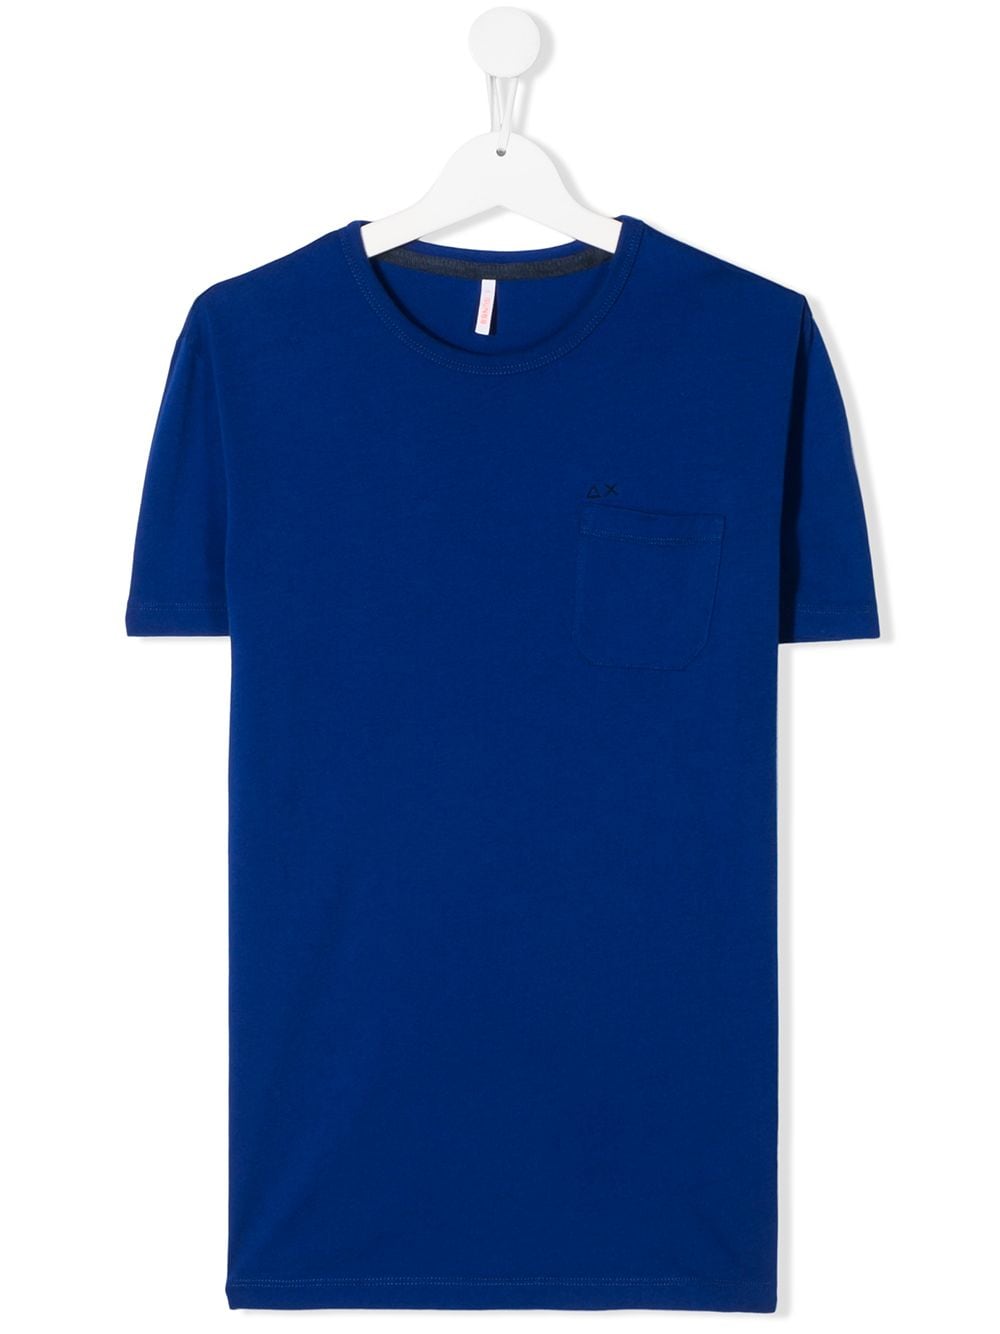 Sun 68 Kids' Logo T-shirt In Blue